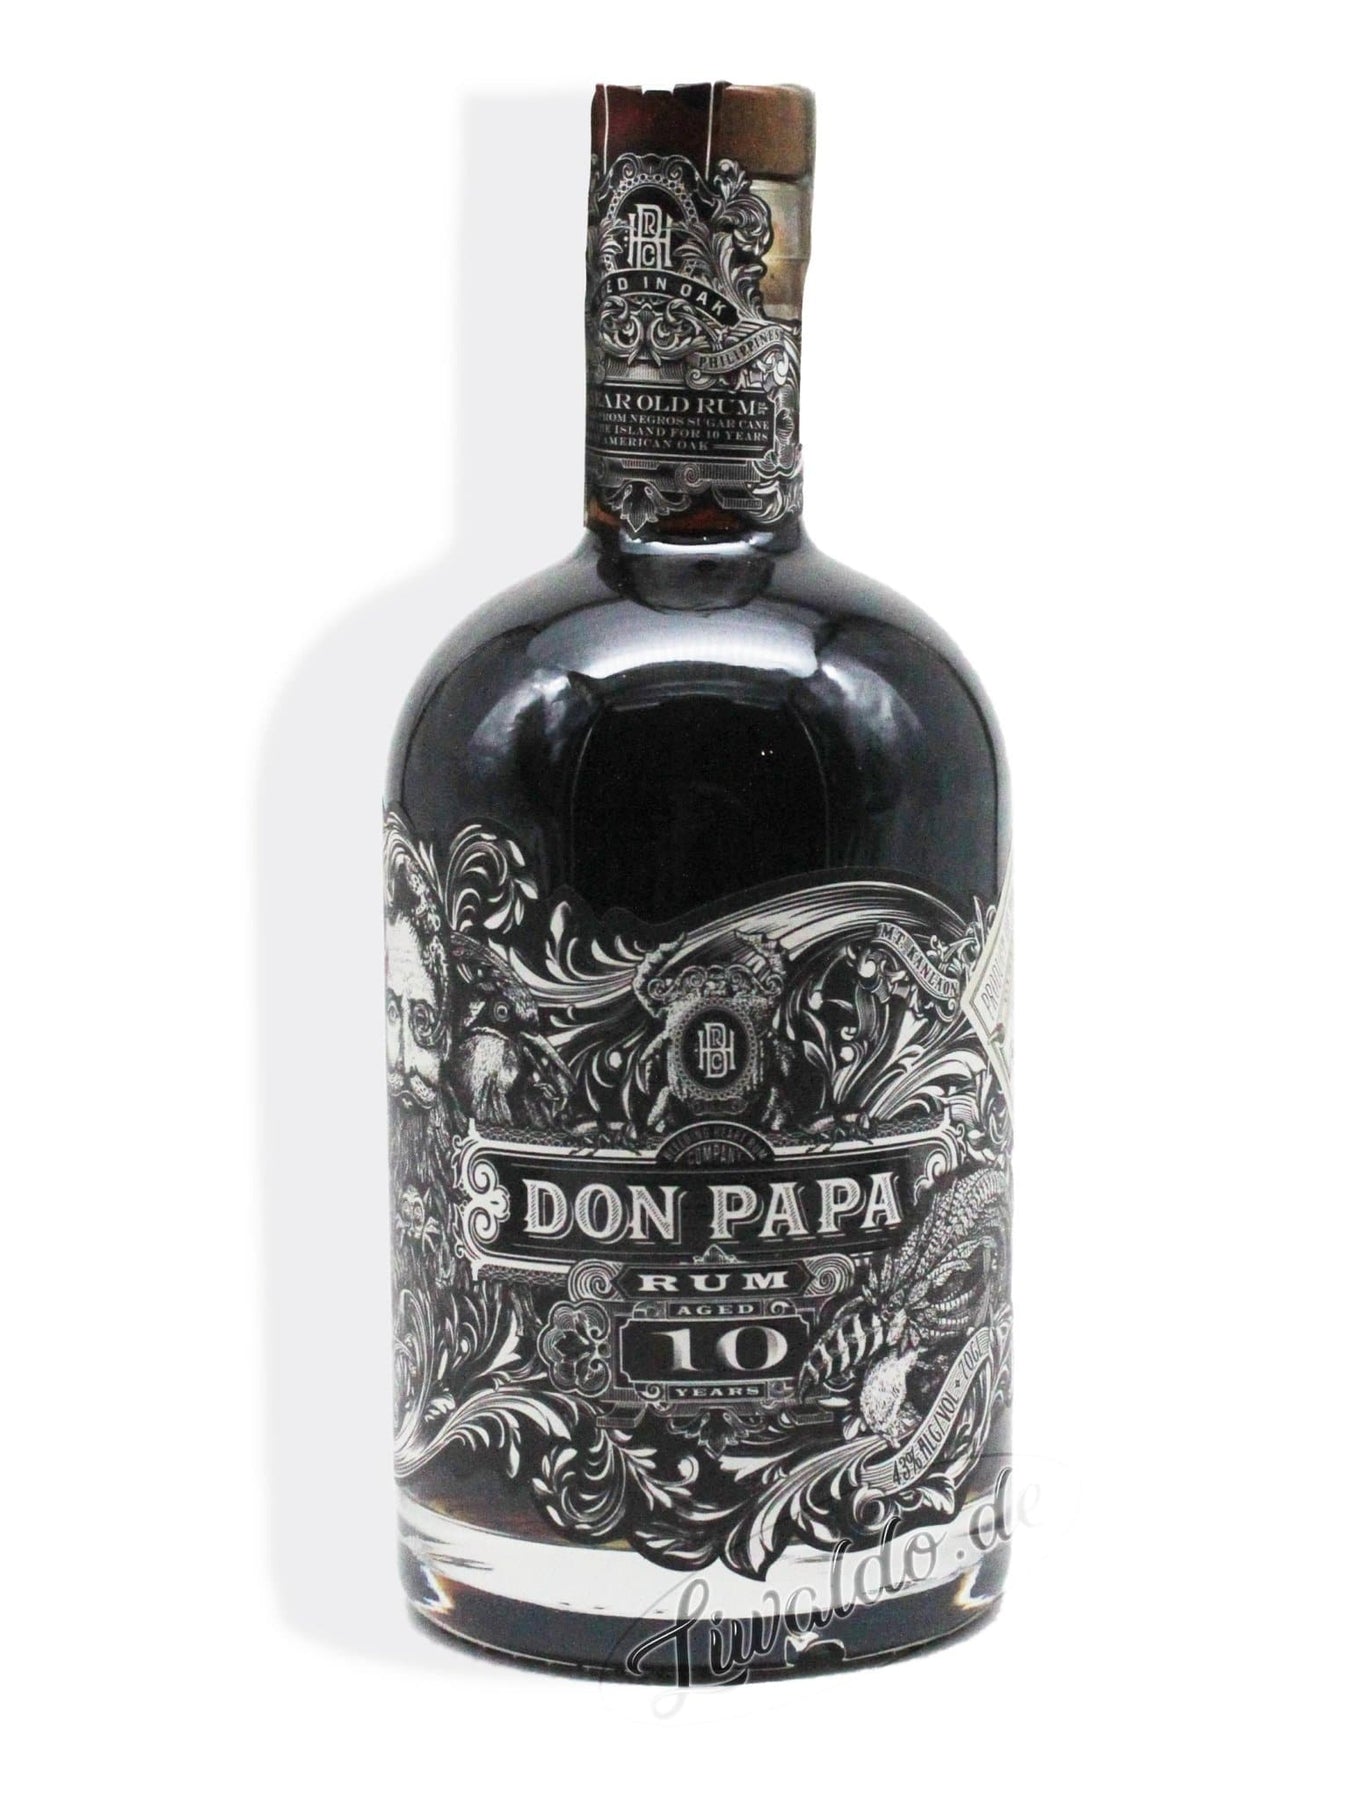 Don Papa 10 Jahre Rum 43% 0,7 l | Online bei